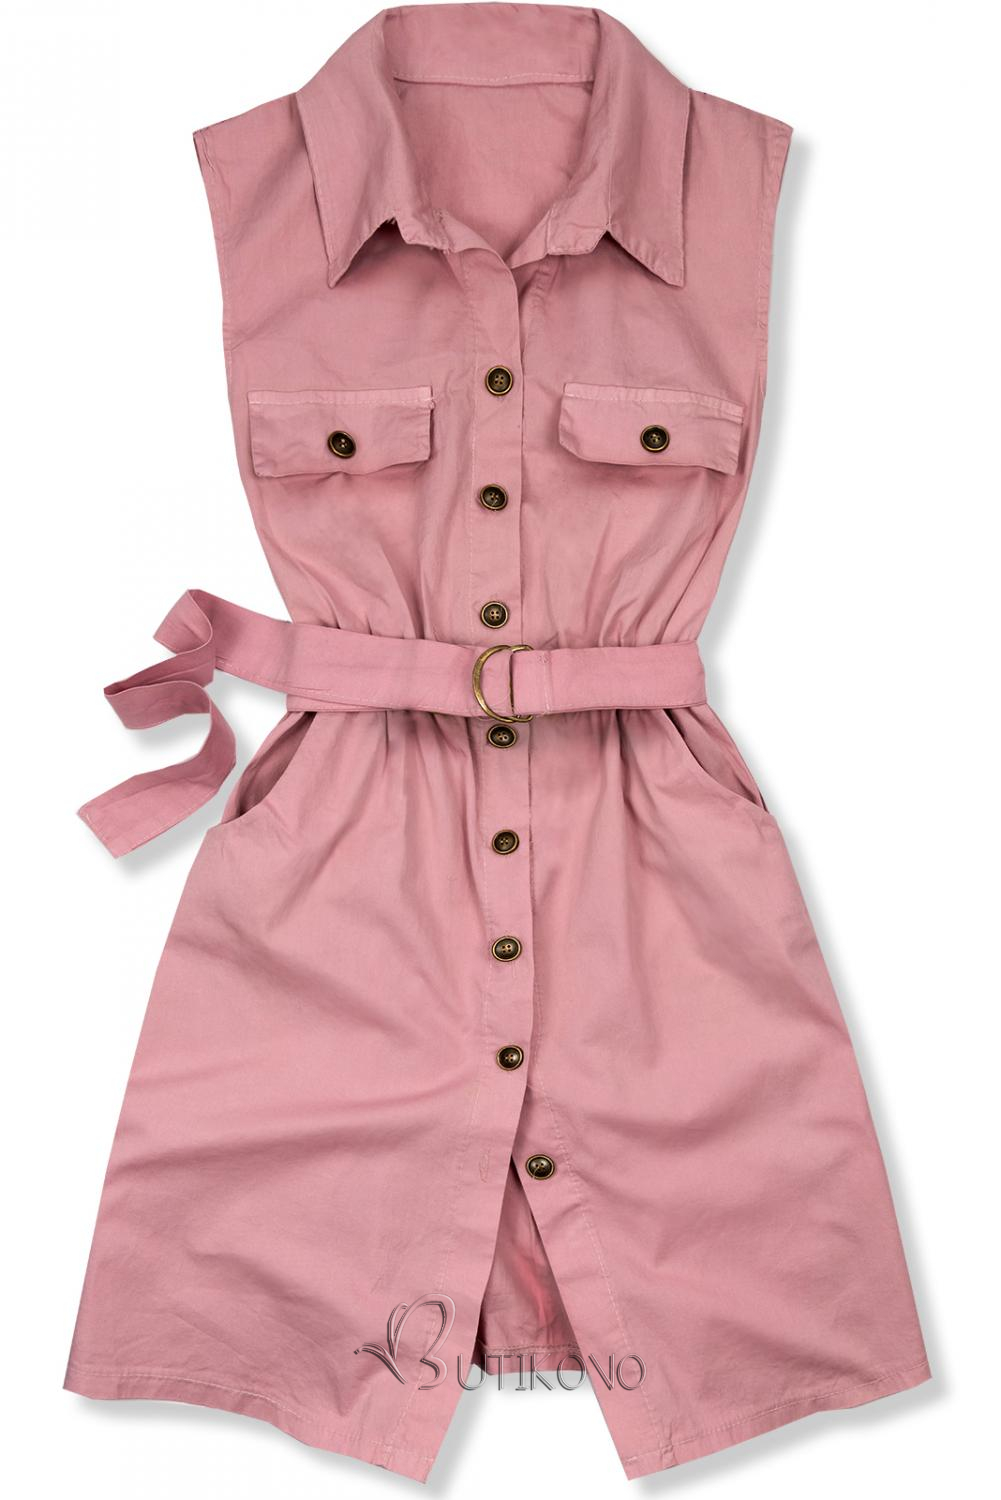 Růžové šaty s páskem